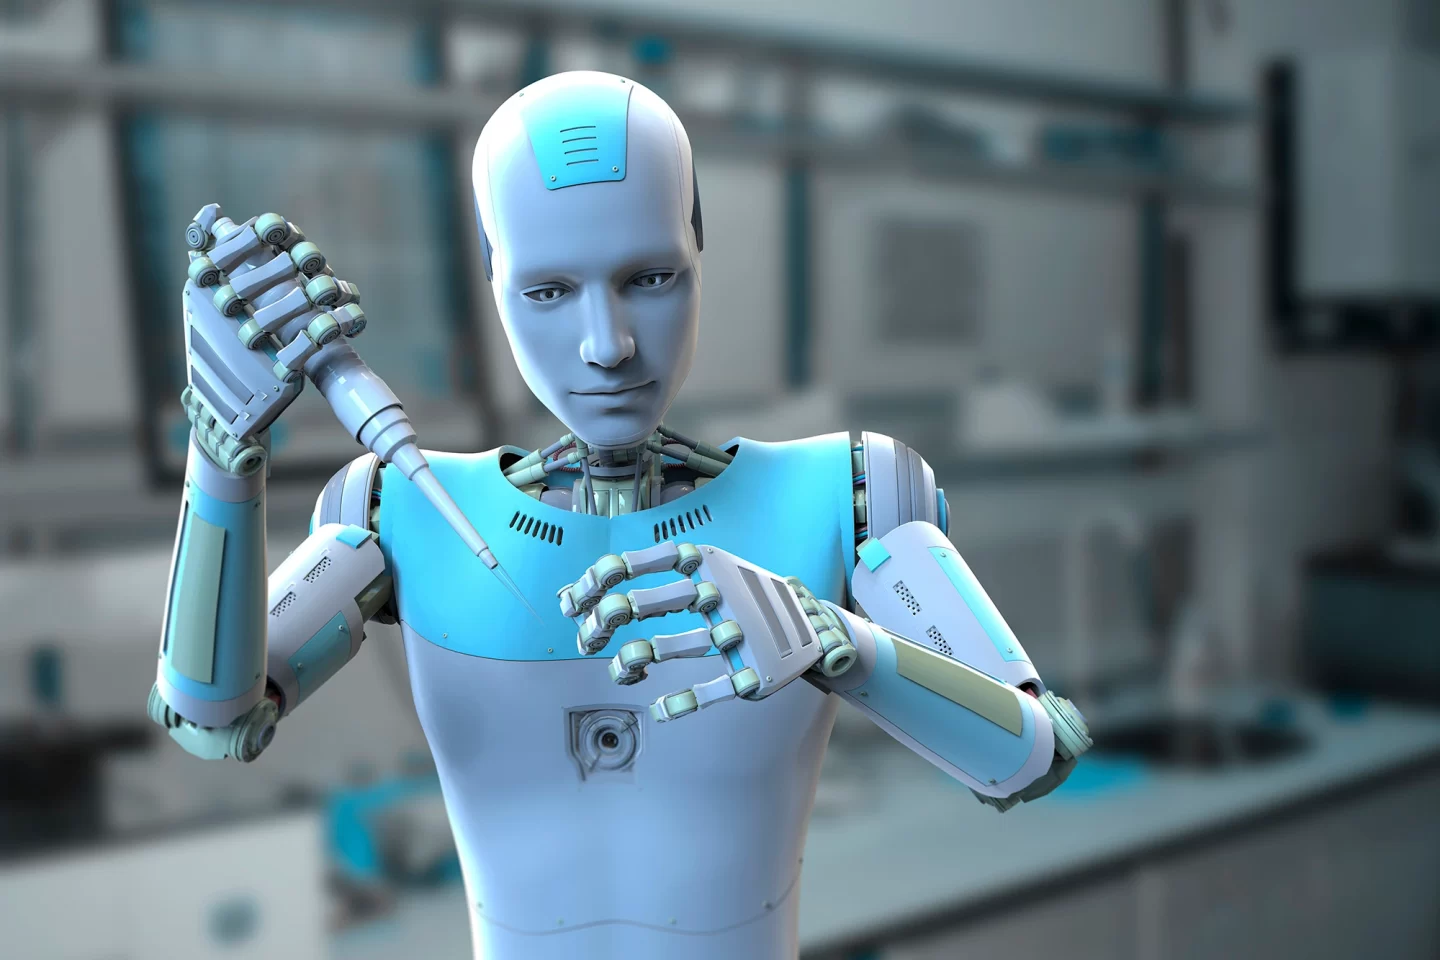 كيوس جي بي تي: برنامج ذكاء اصطناعي يسعى لتدمير البشرية، وهو متصل الآن بالإنترنت!